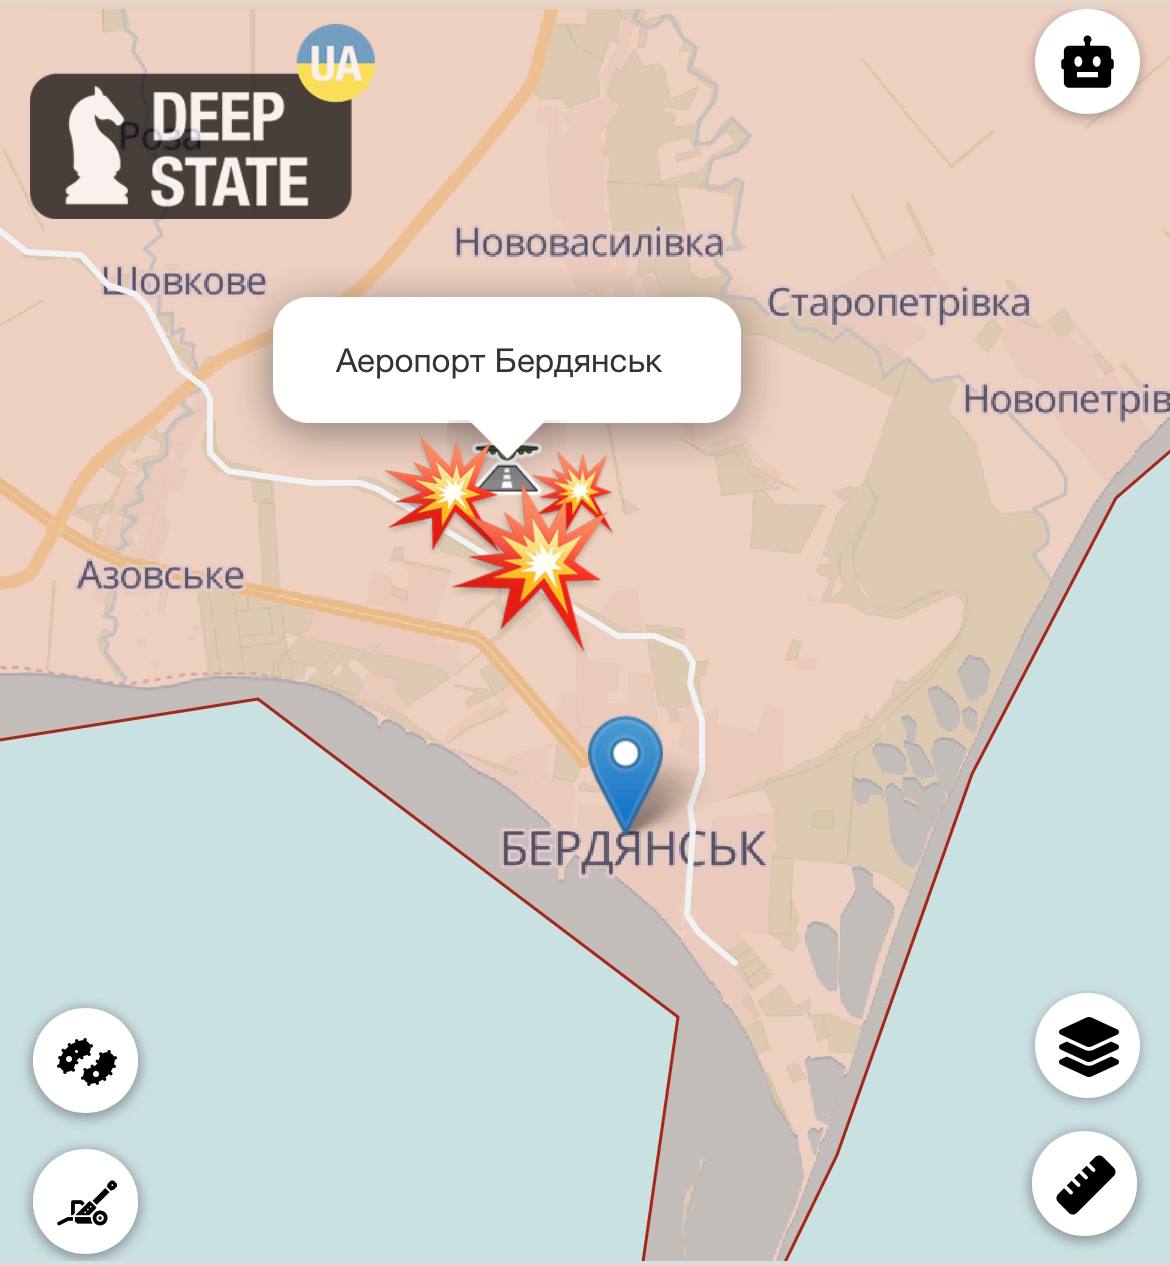 Телеграмм украина реальная война фото 93